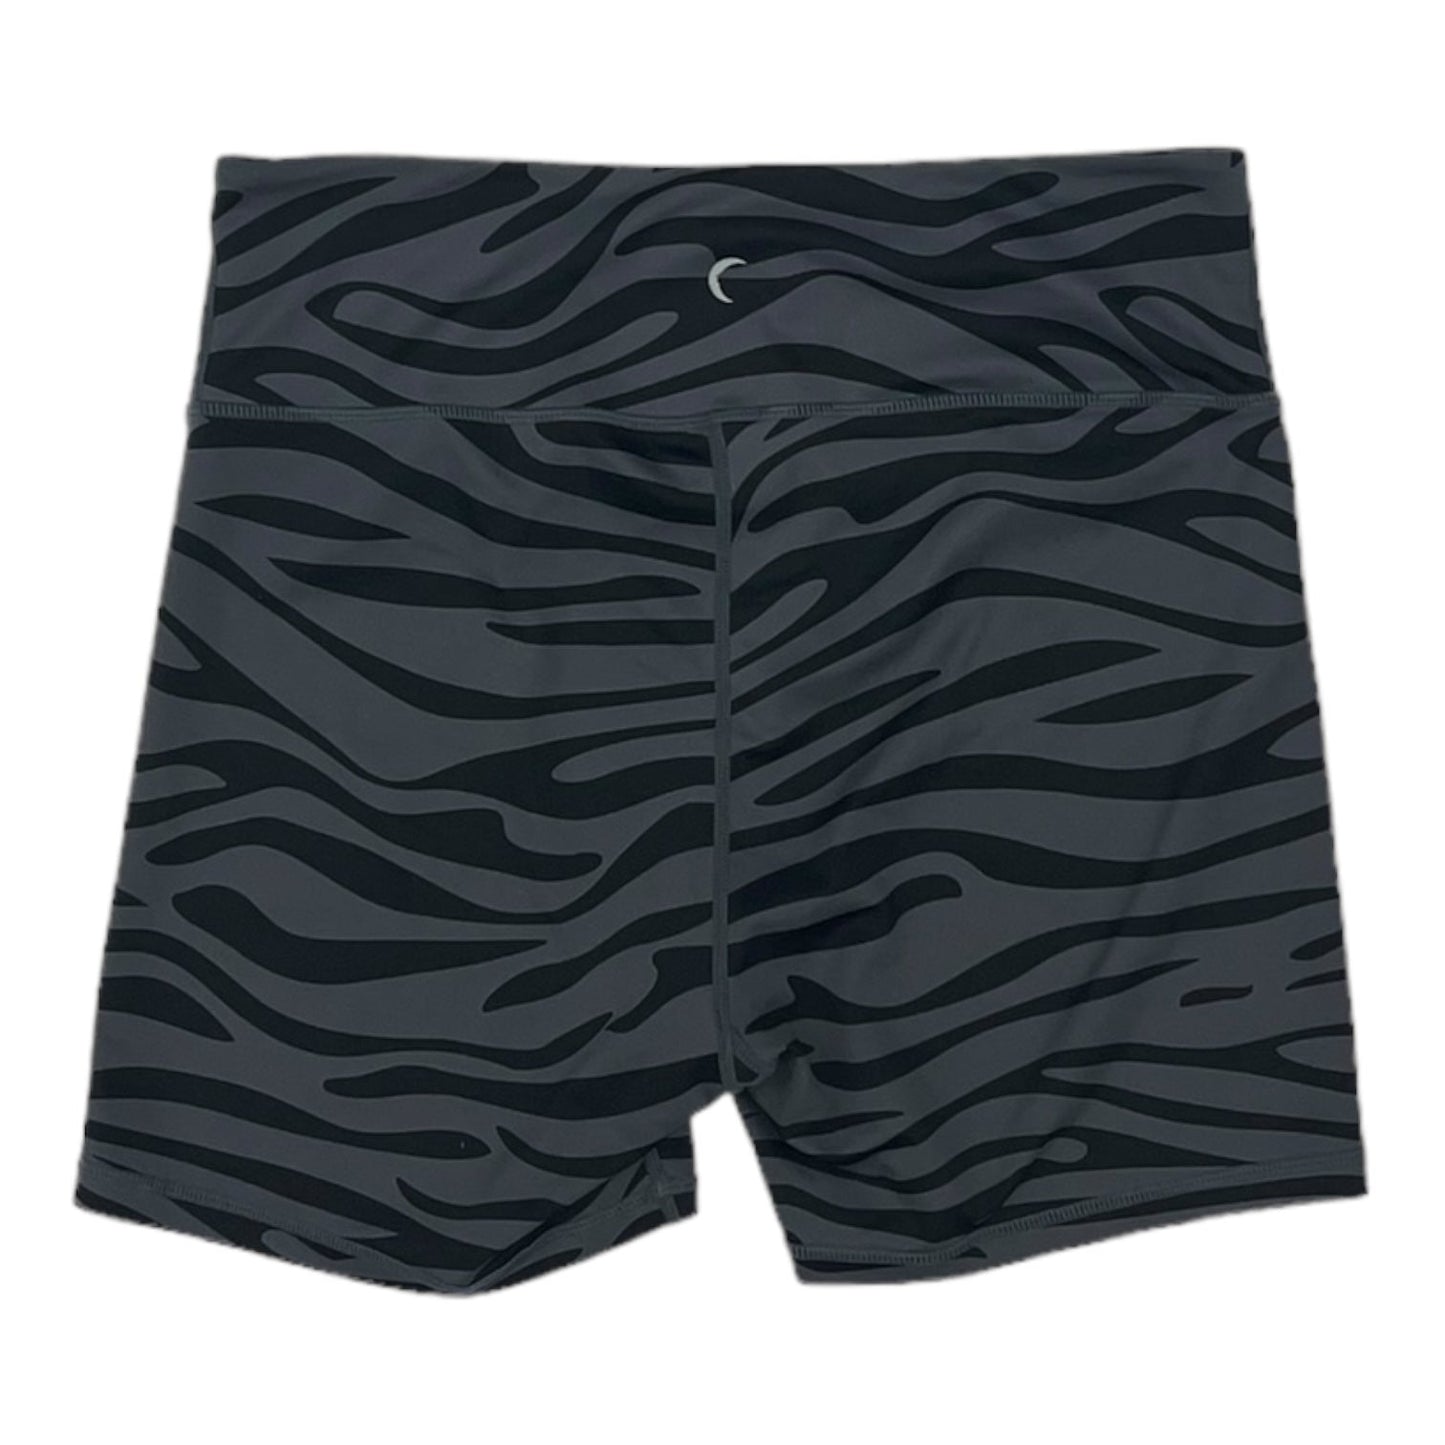 Black & Grey Athletic Shorts Zyia, Size 2x